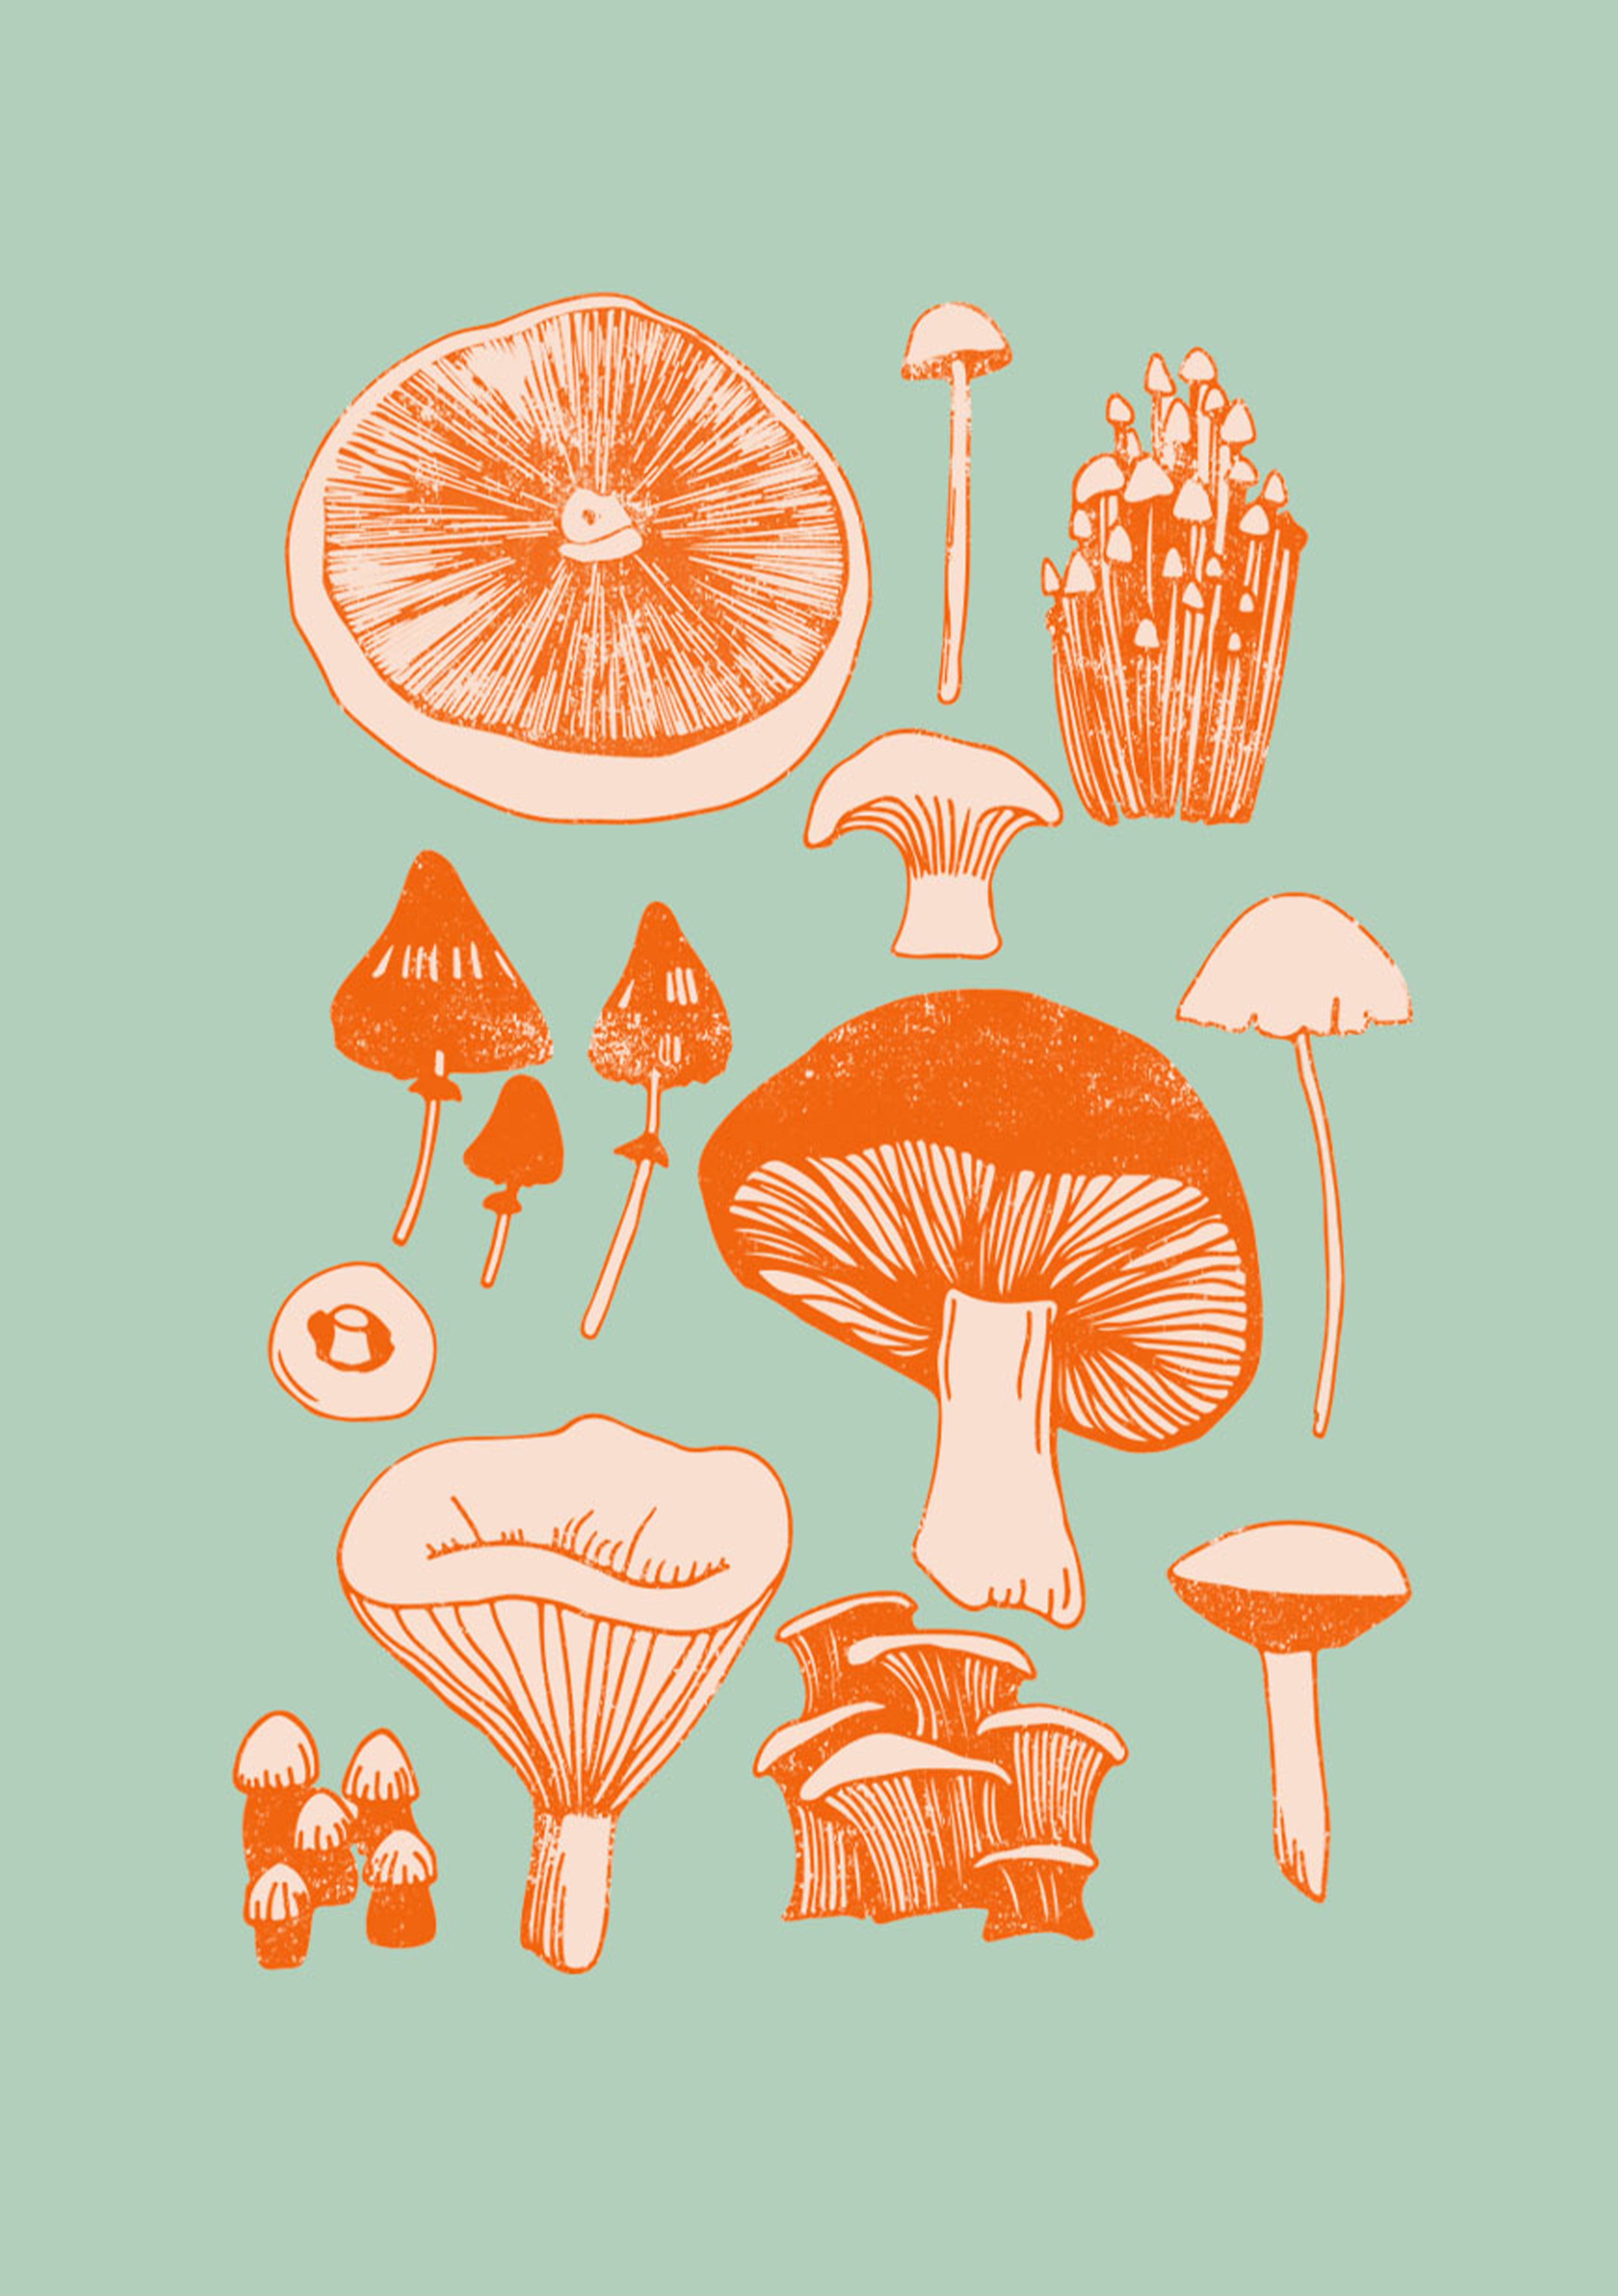 Mushroom fungi wall art print. Etsy. Fungi art, Art prints, Mushroom art